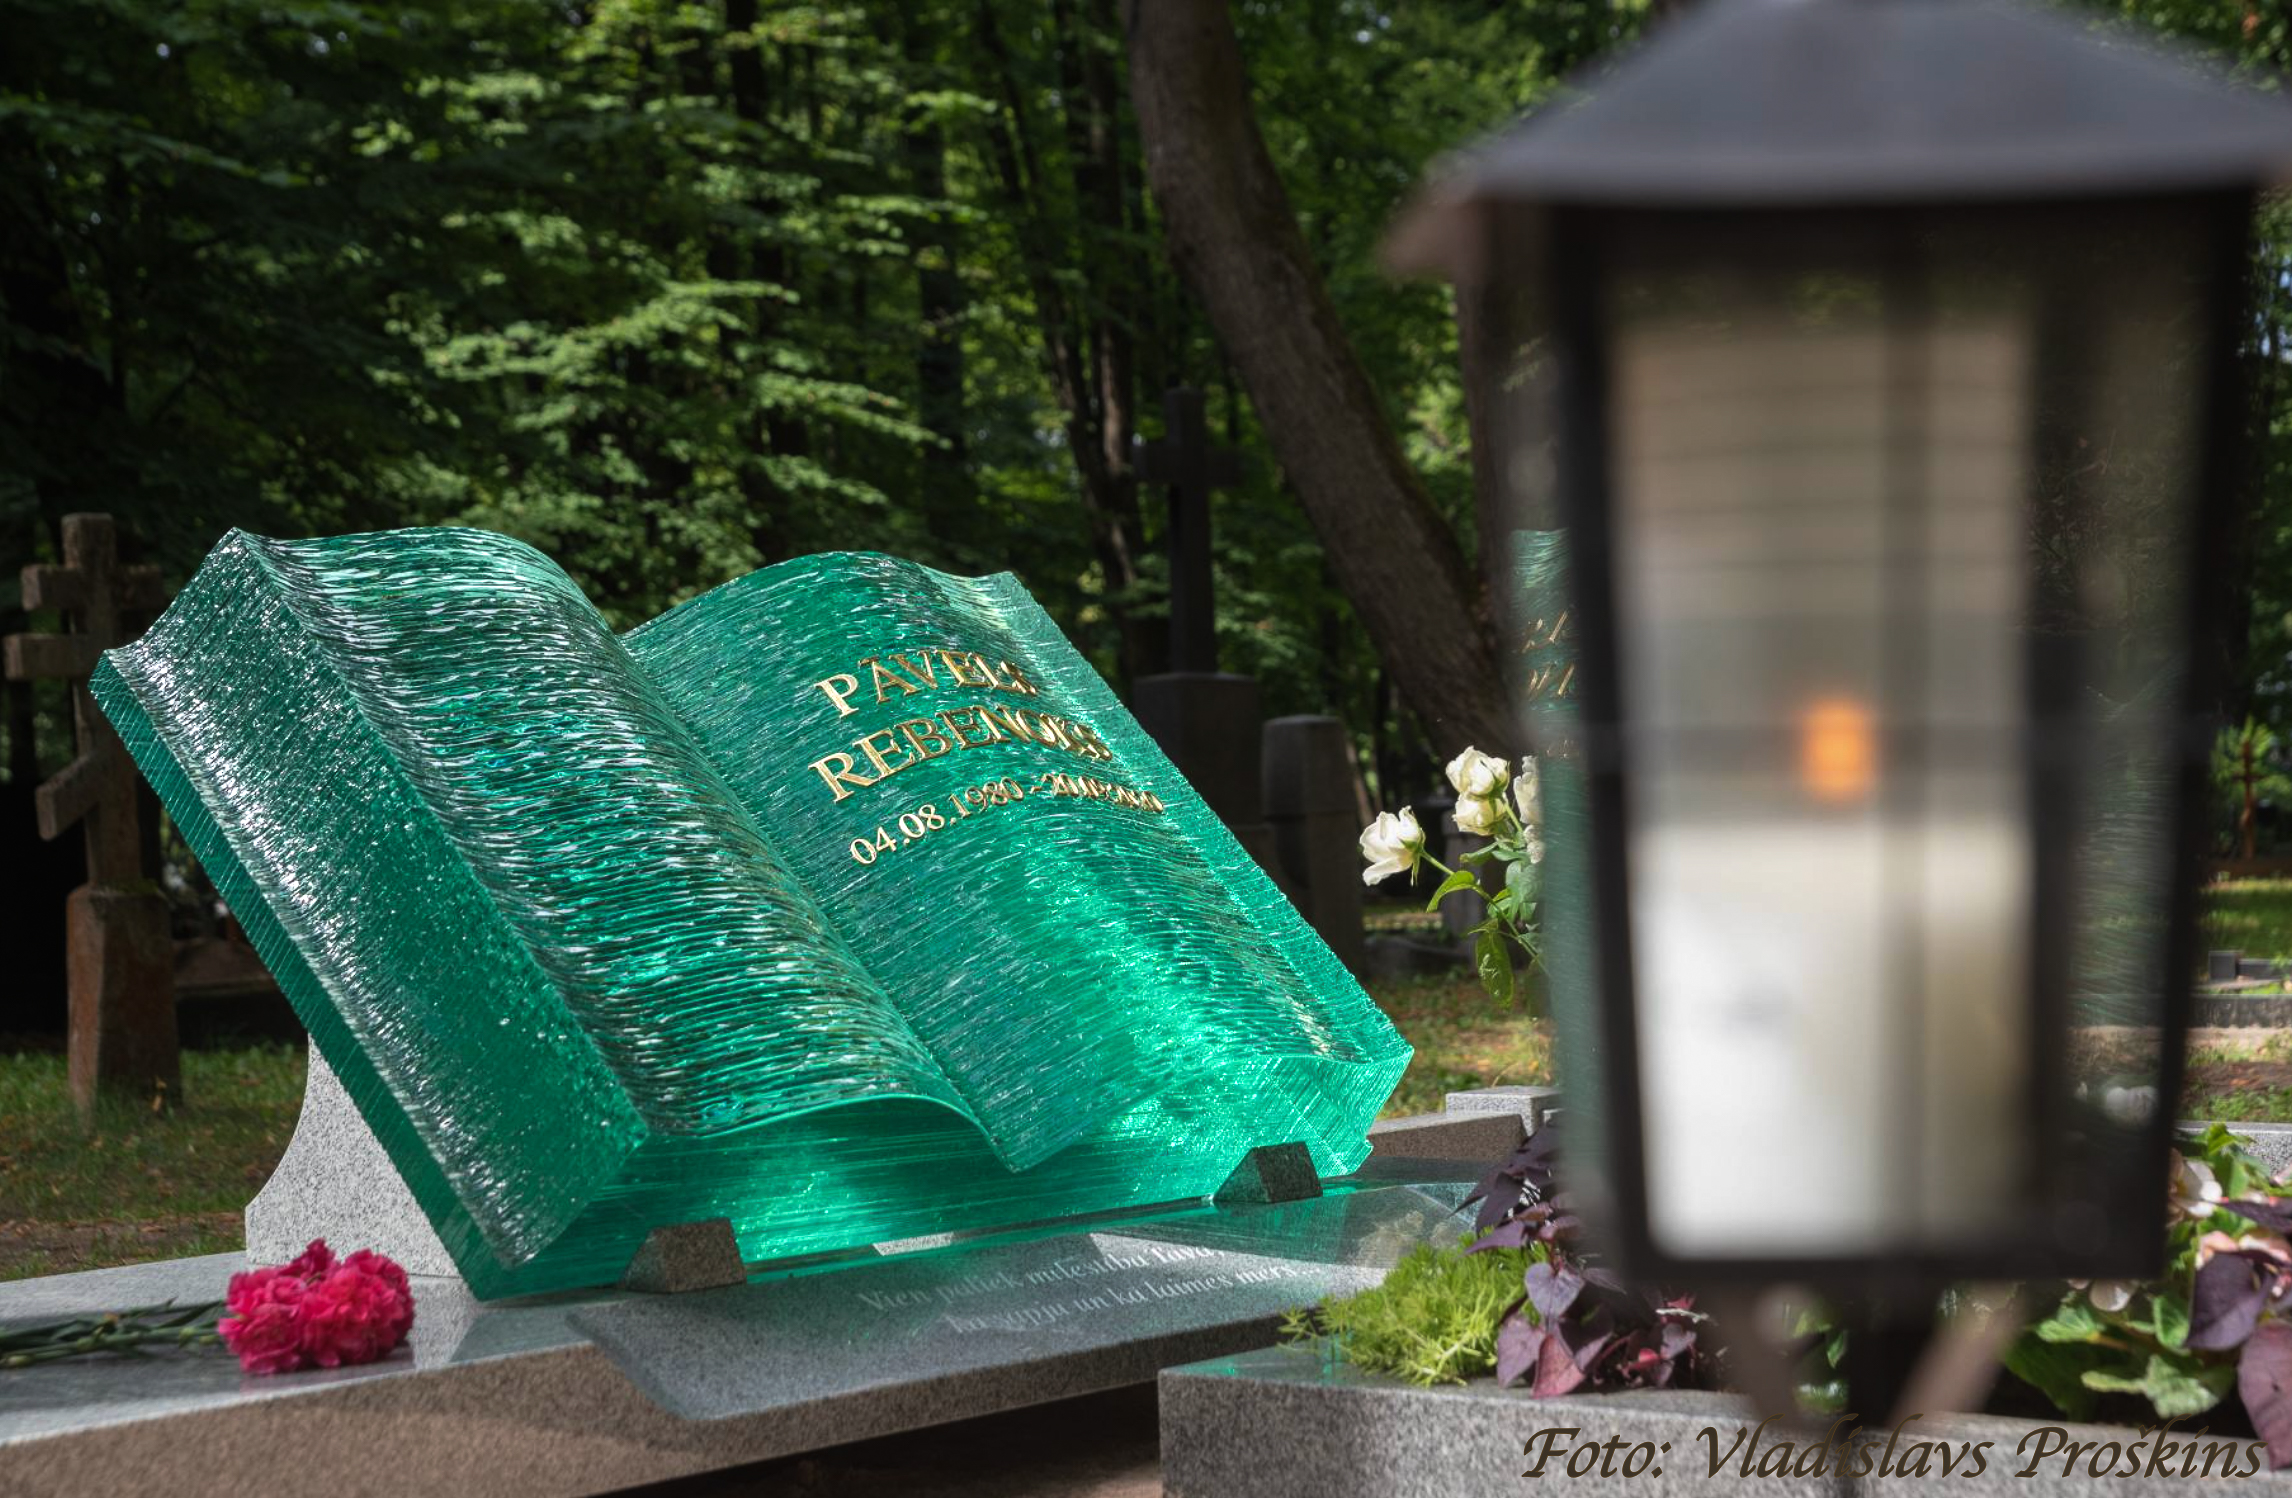 Специальное надгробие в виде книги из стекла,надгробие-книга,надгробие в форме книги,надгробный памятник в форме книги,стеклянное надгробие,стеклянный надгробный памятник